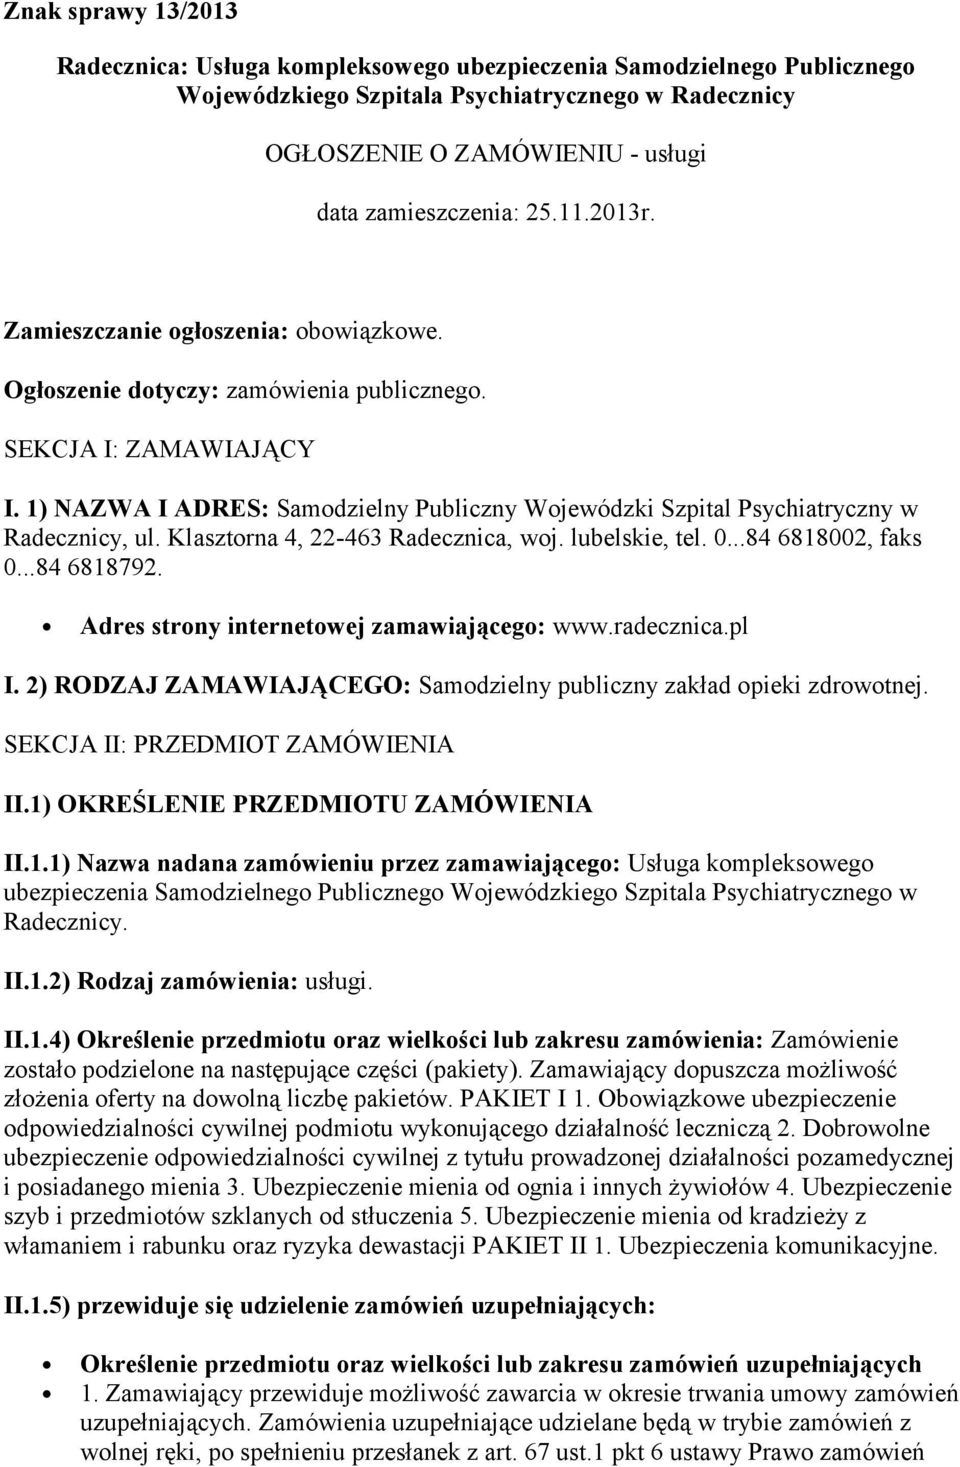 1) NAZWA I ADRES: Samodzielny Publiczny Wojewódzki Szpital Psychiatryczny w Radecznicy, ul. Klasztorna 4, 22-463 Radecznica, woj. lubelskie, tel. 0...84 6818002, faks 0...84 6818792.